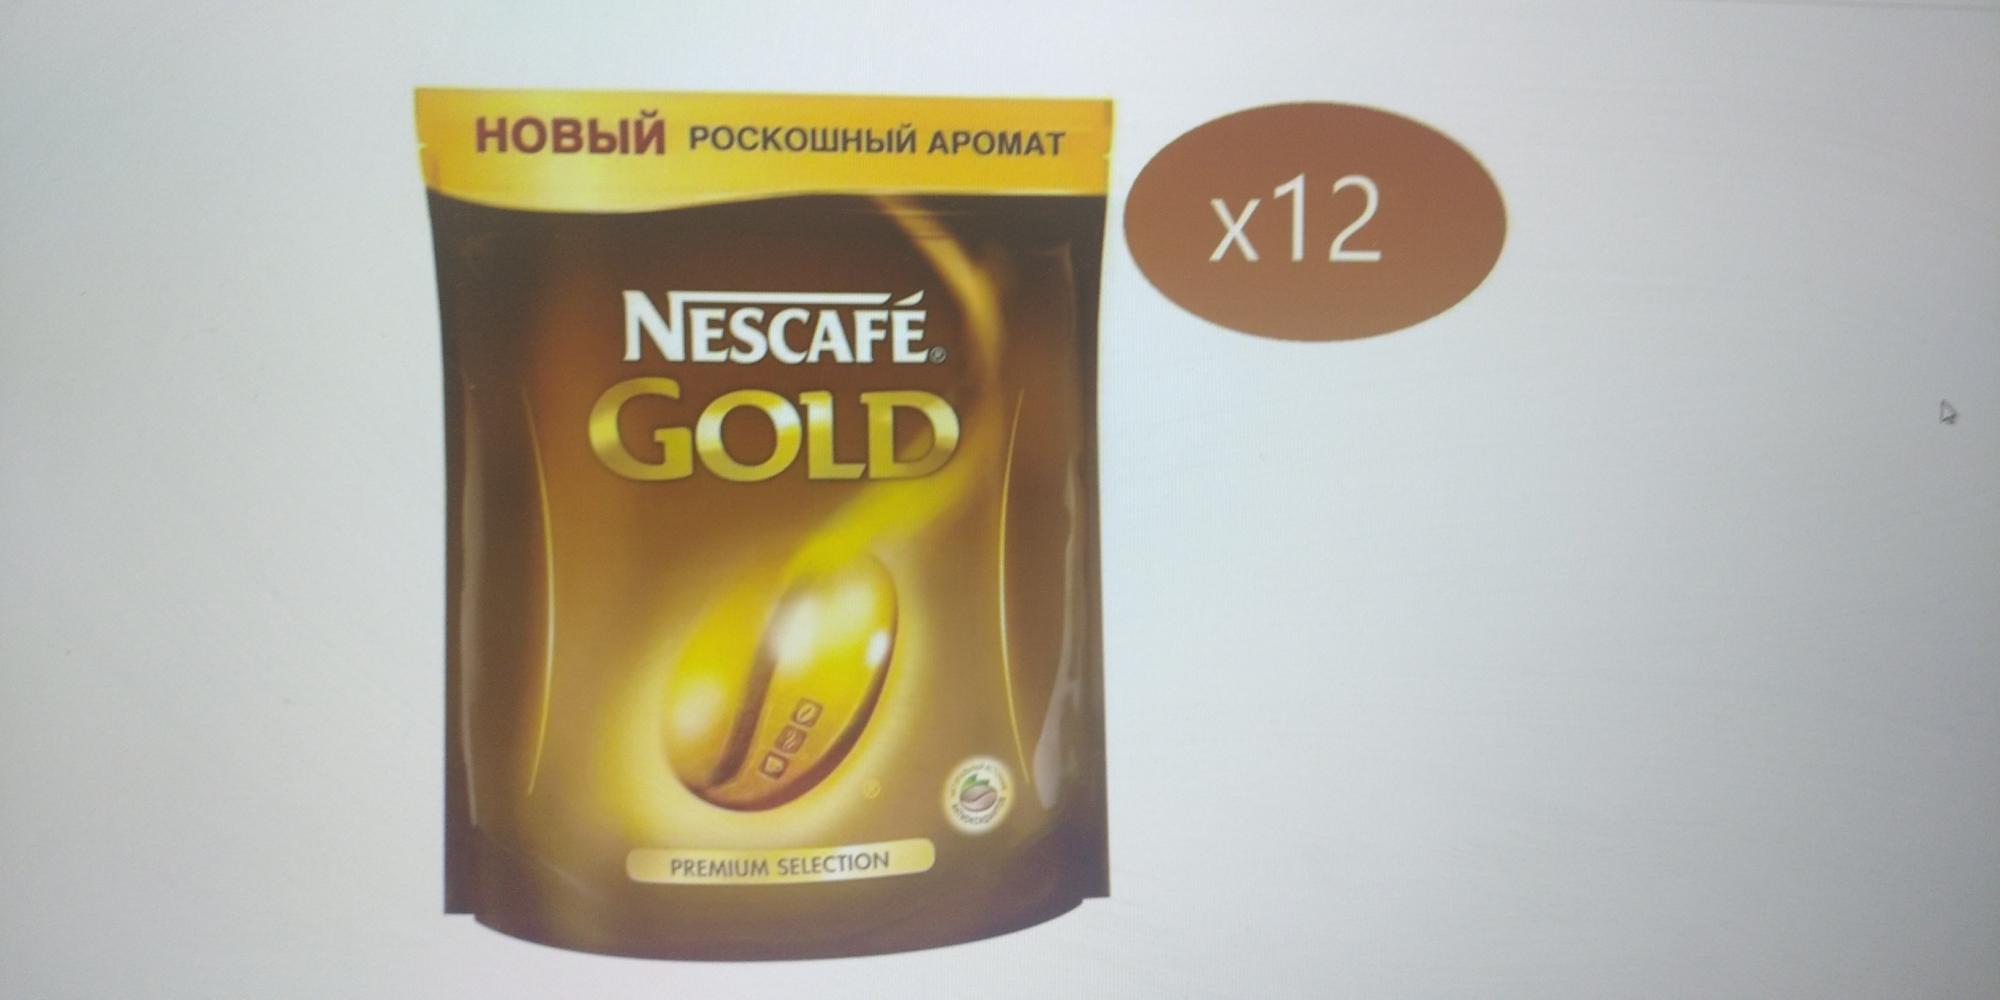 Кофе nescafe gold 190. Nescafe Gold 60 гр. Nescafe Gold 900 гр купить. Nescafe Gold кофе пакет 60 грамм. Кофе Нескафе Голд 190 гр в пакете.